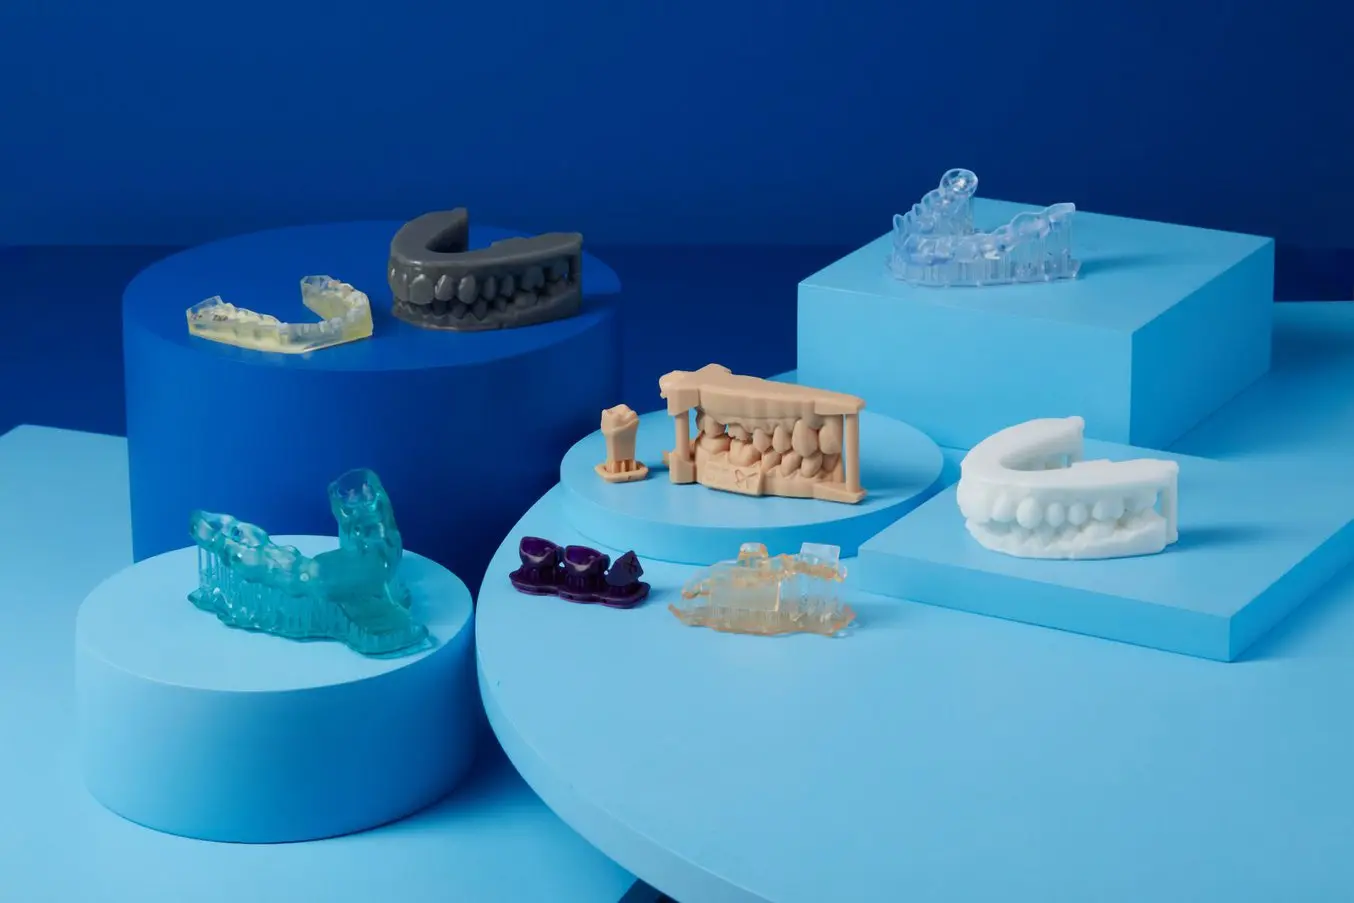 L'impression 3D SLA offre un large choix de matériaux d'impression 3D, y compris des matériaux biocompatibles, pour toute une série d'applications médicales et dentaires.